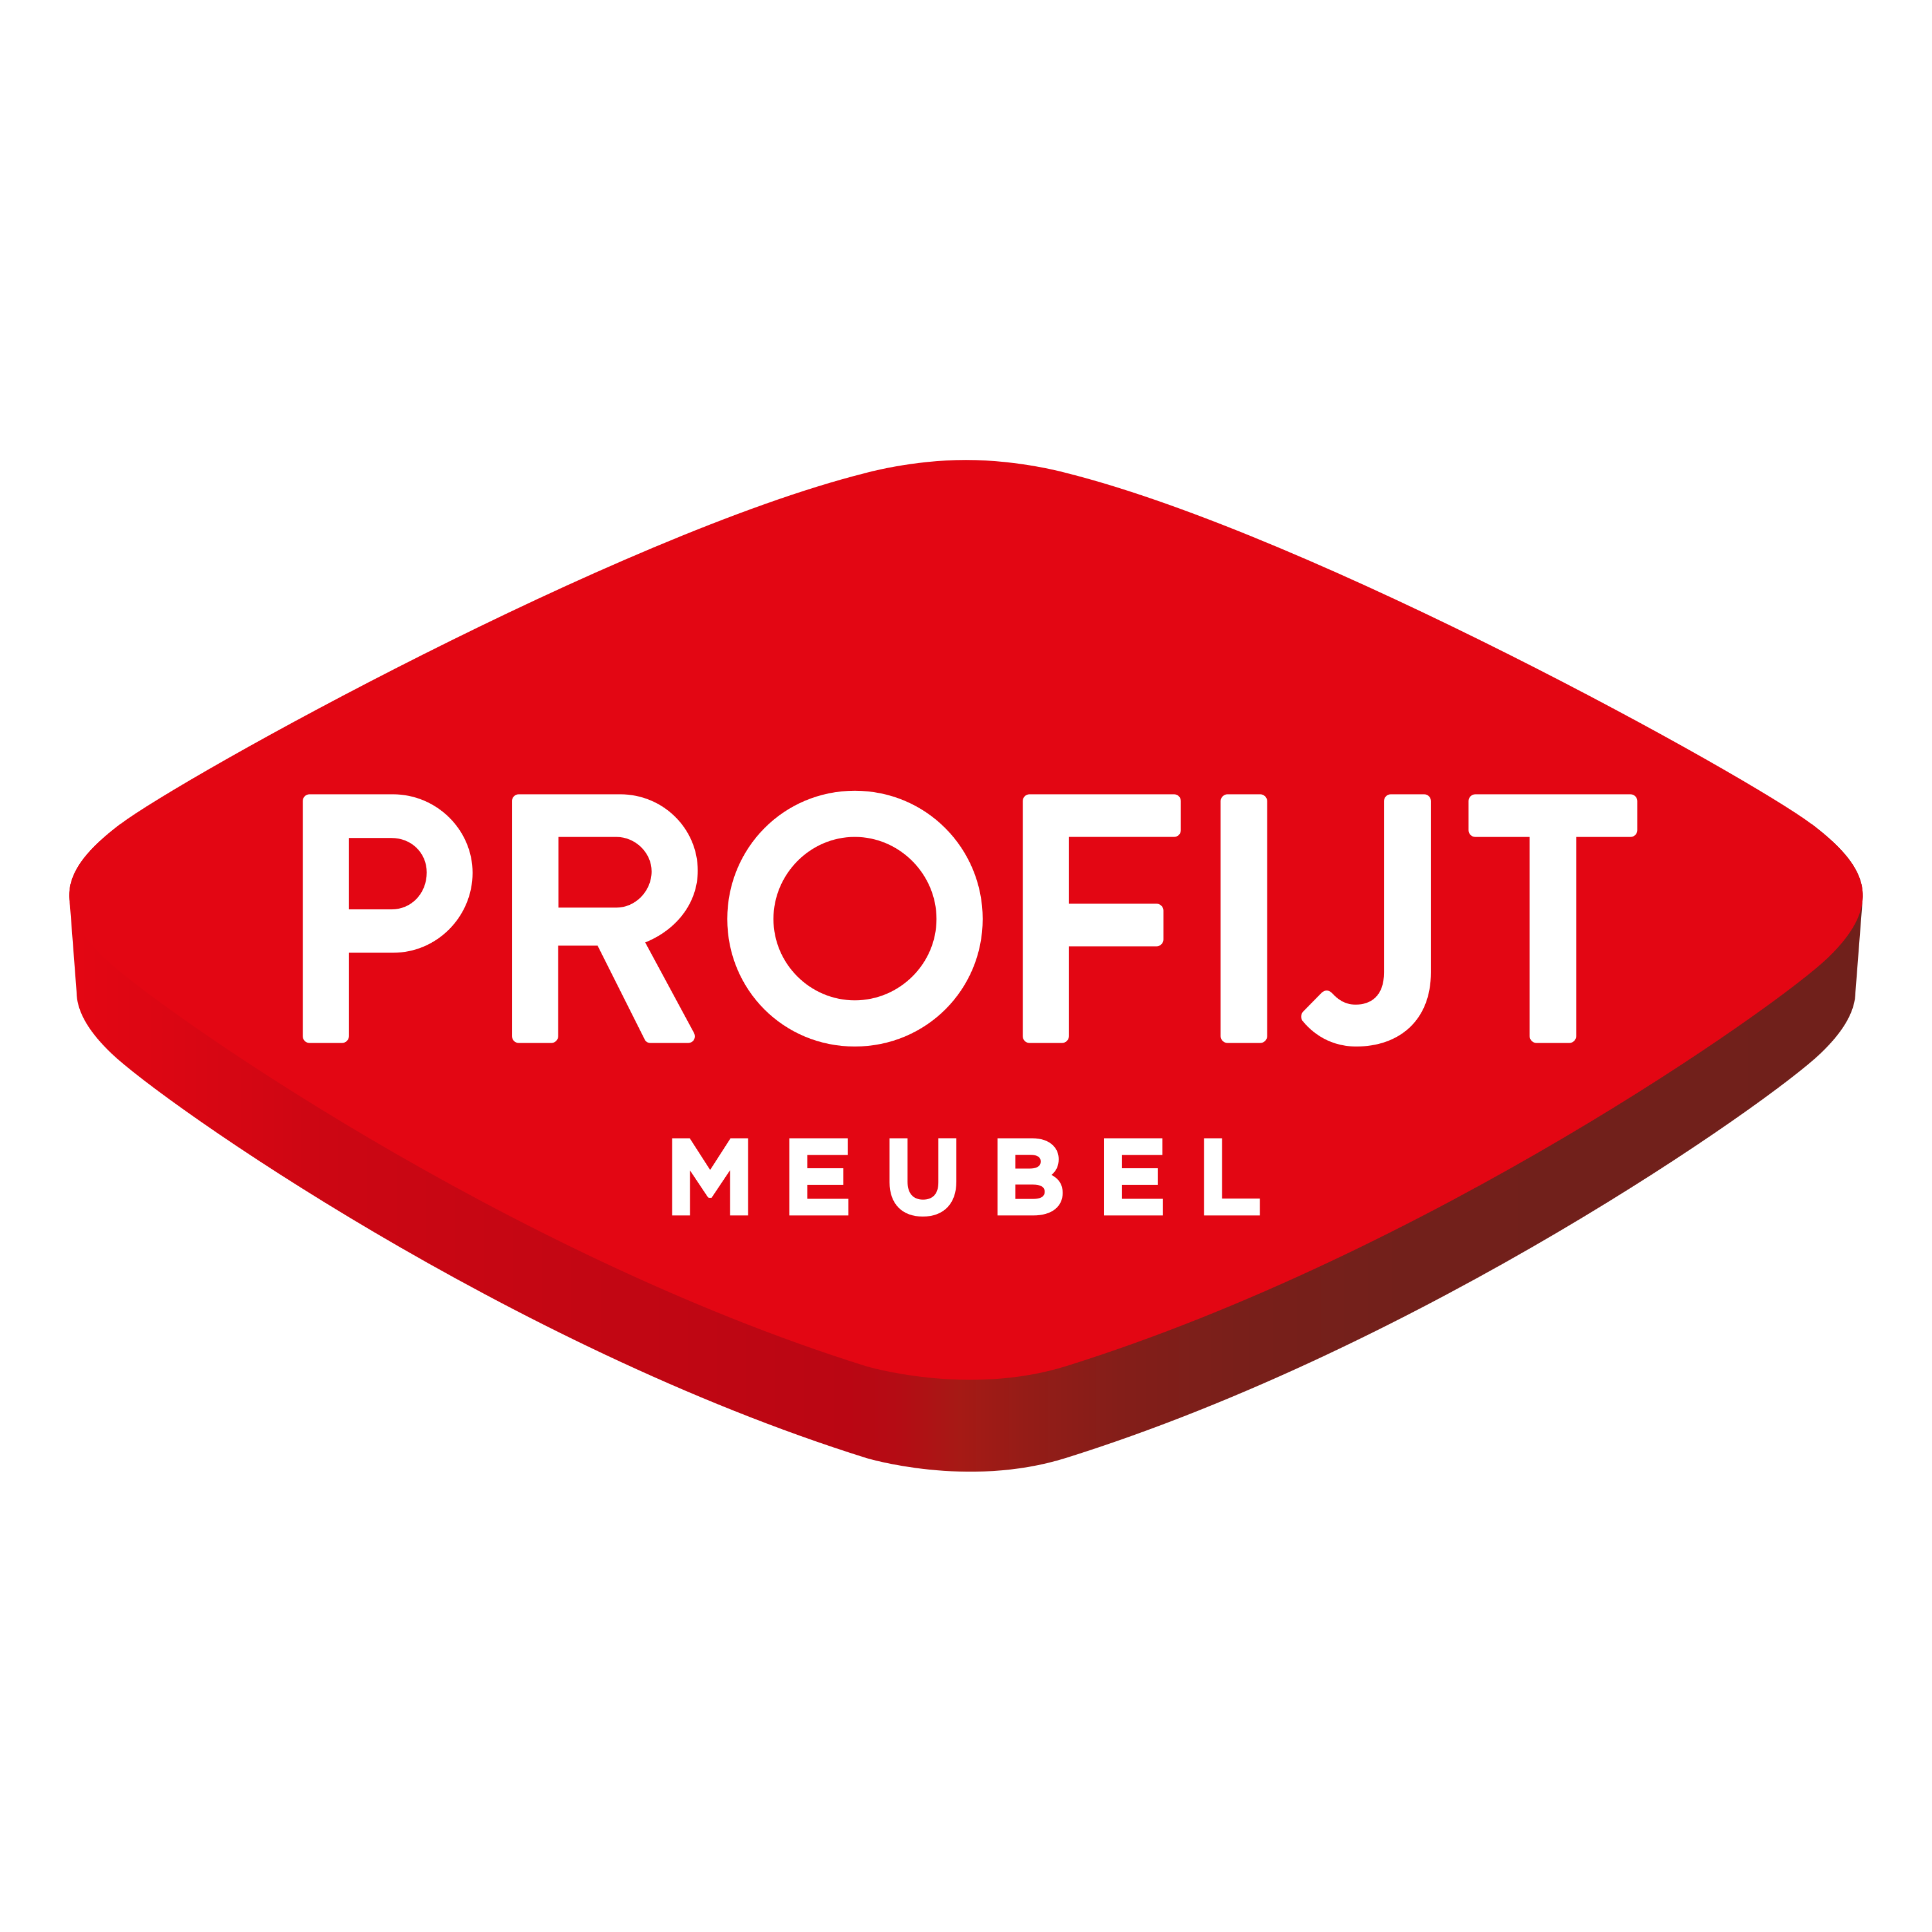 Profijt Meubel Logo  Transparent Image